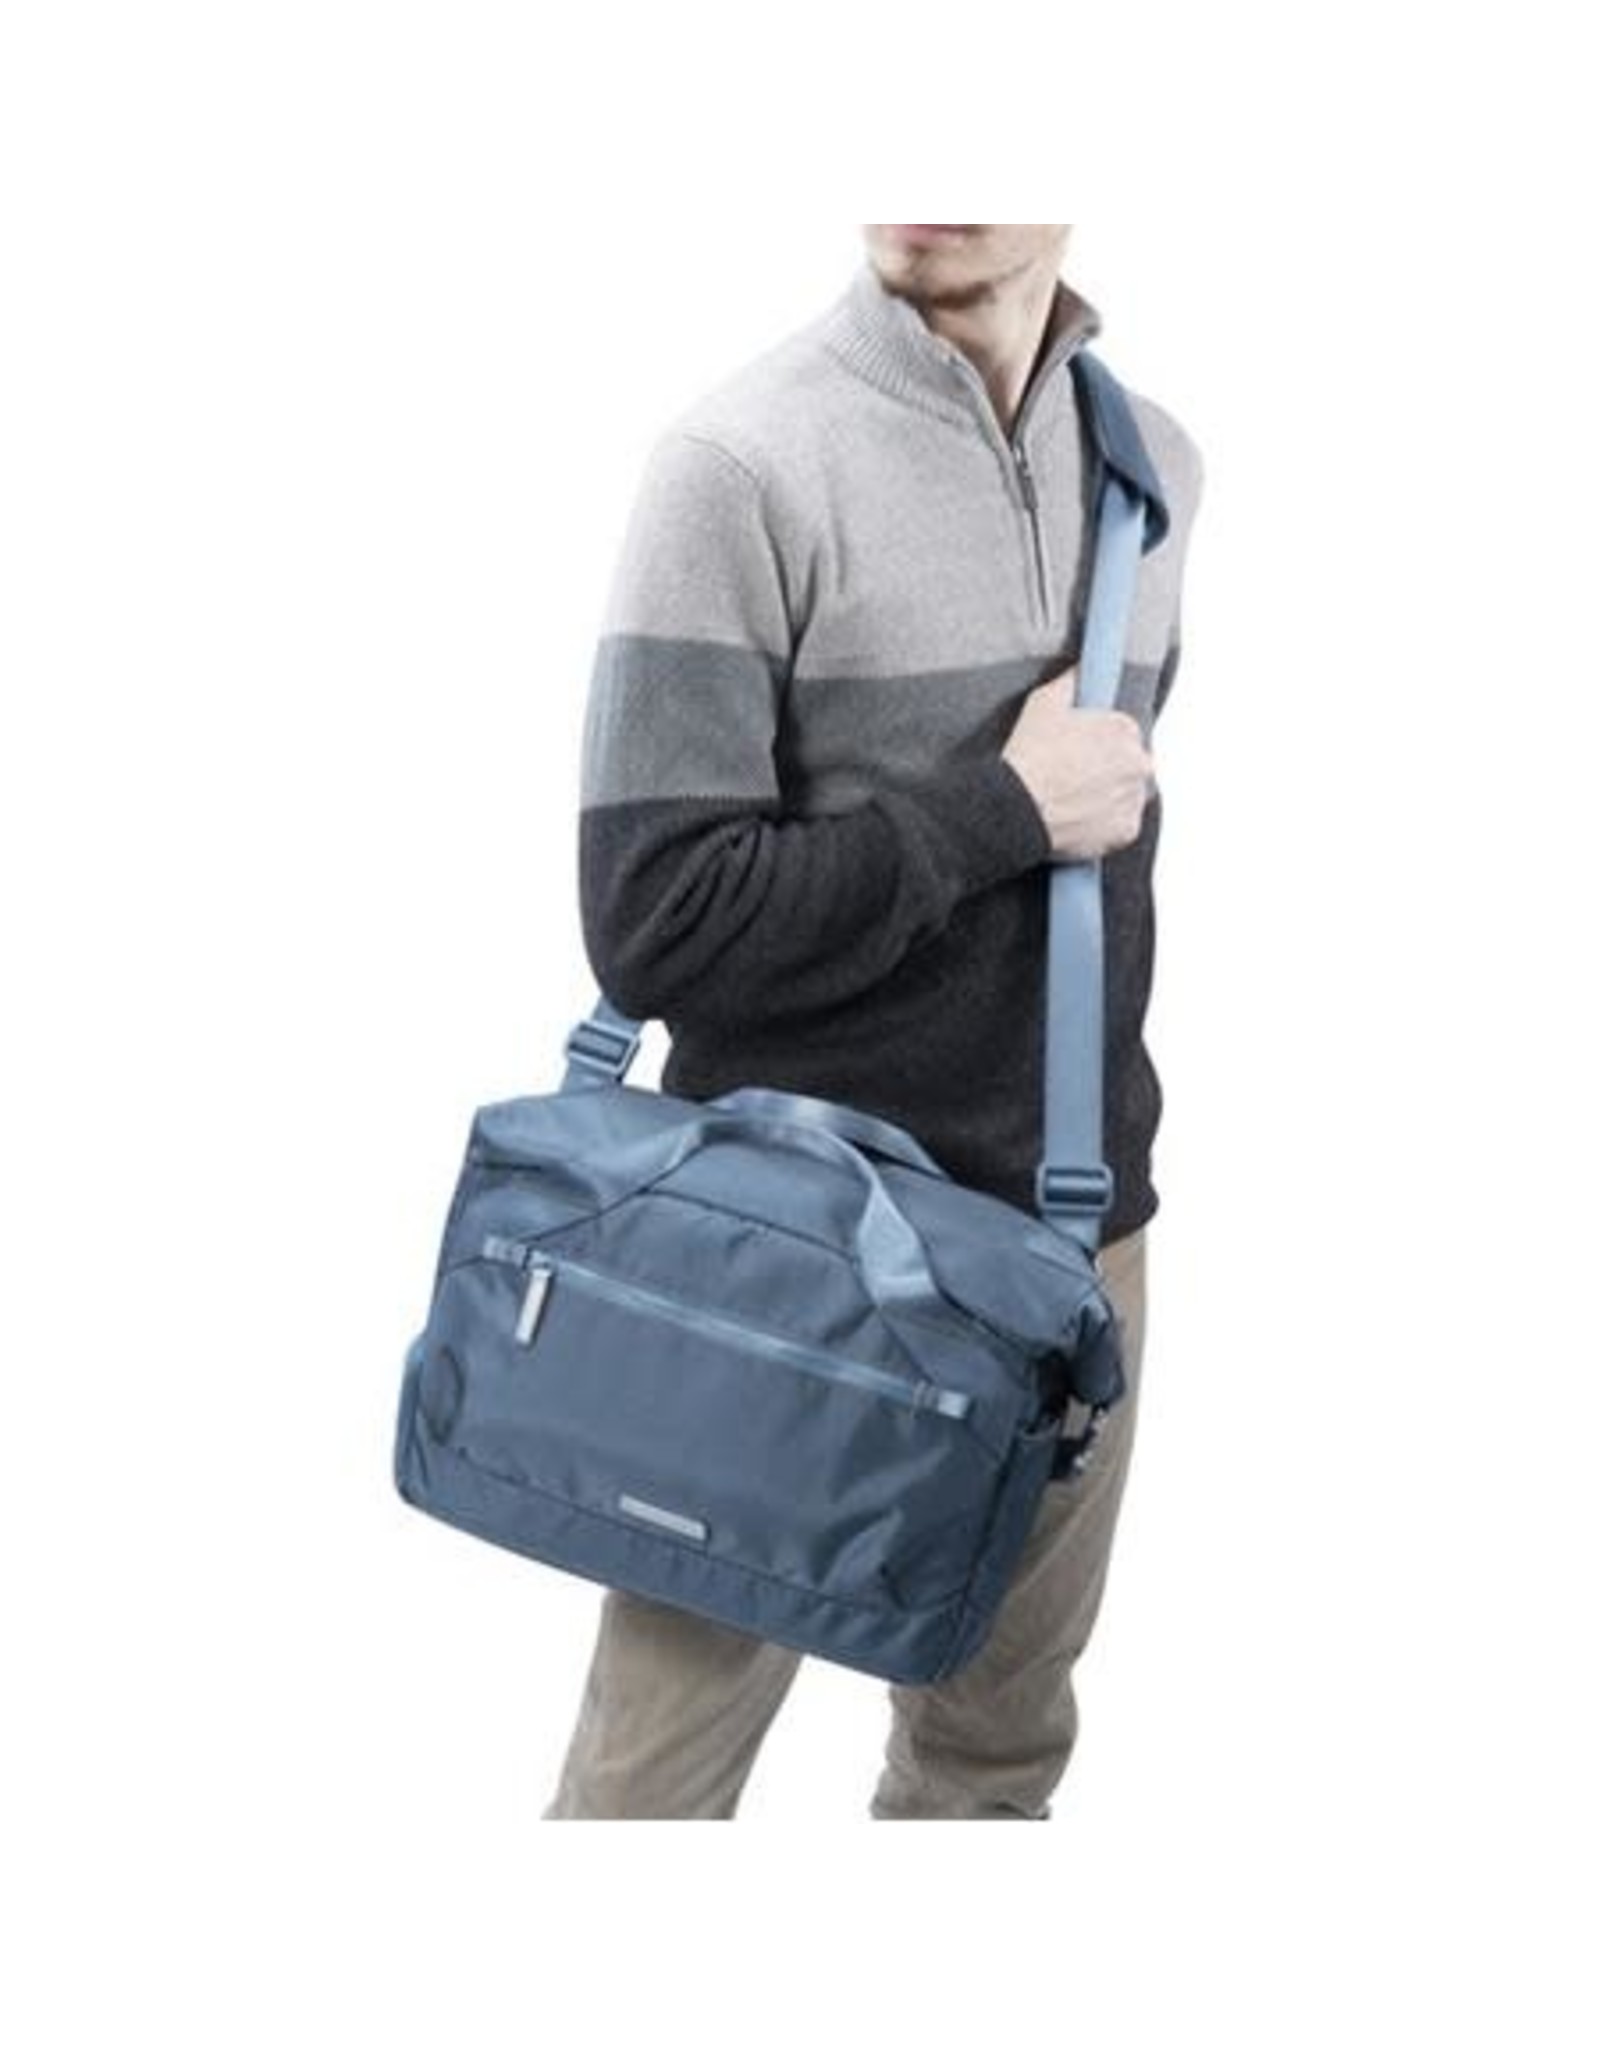 Vanguard Vanguard VEO FLEX 35M Slim Rolltop Shoulder Bag (Choose Color)